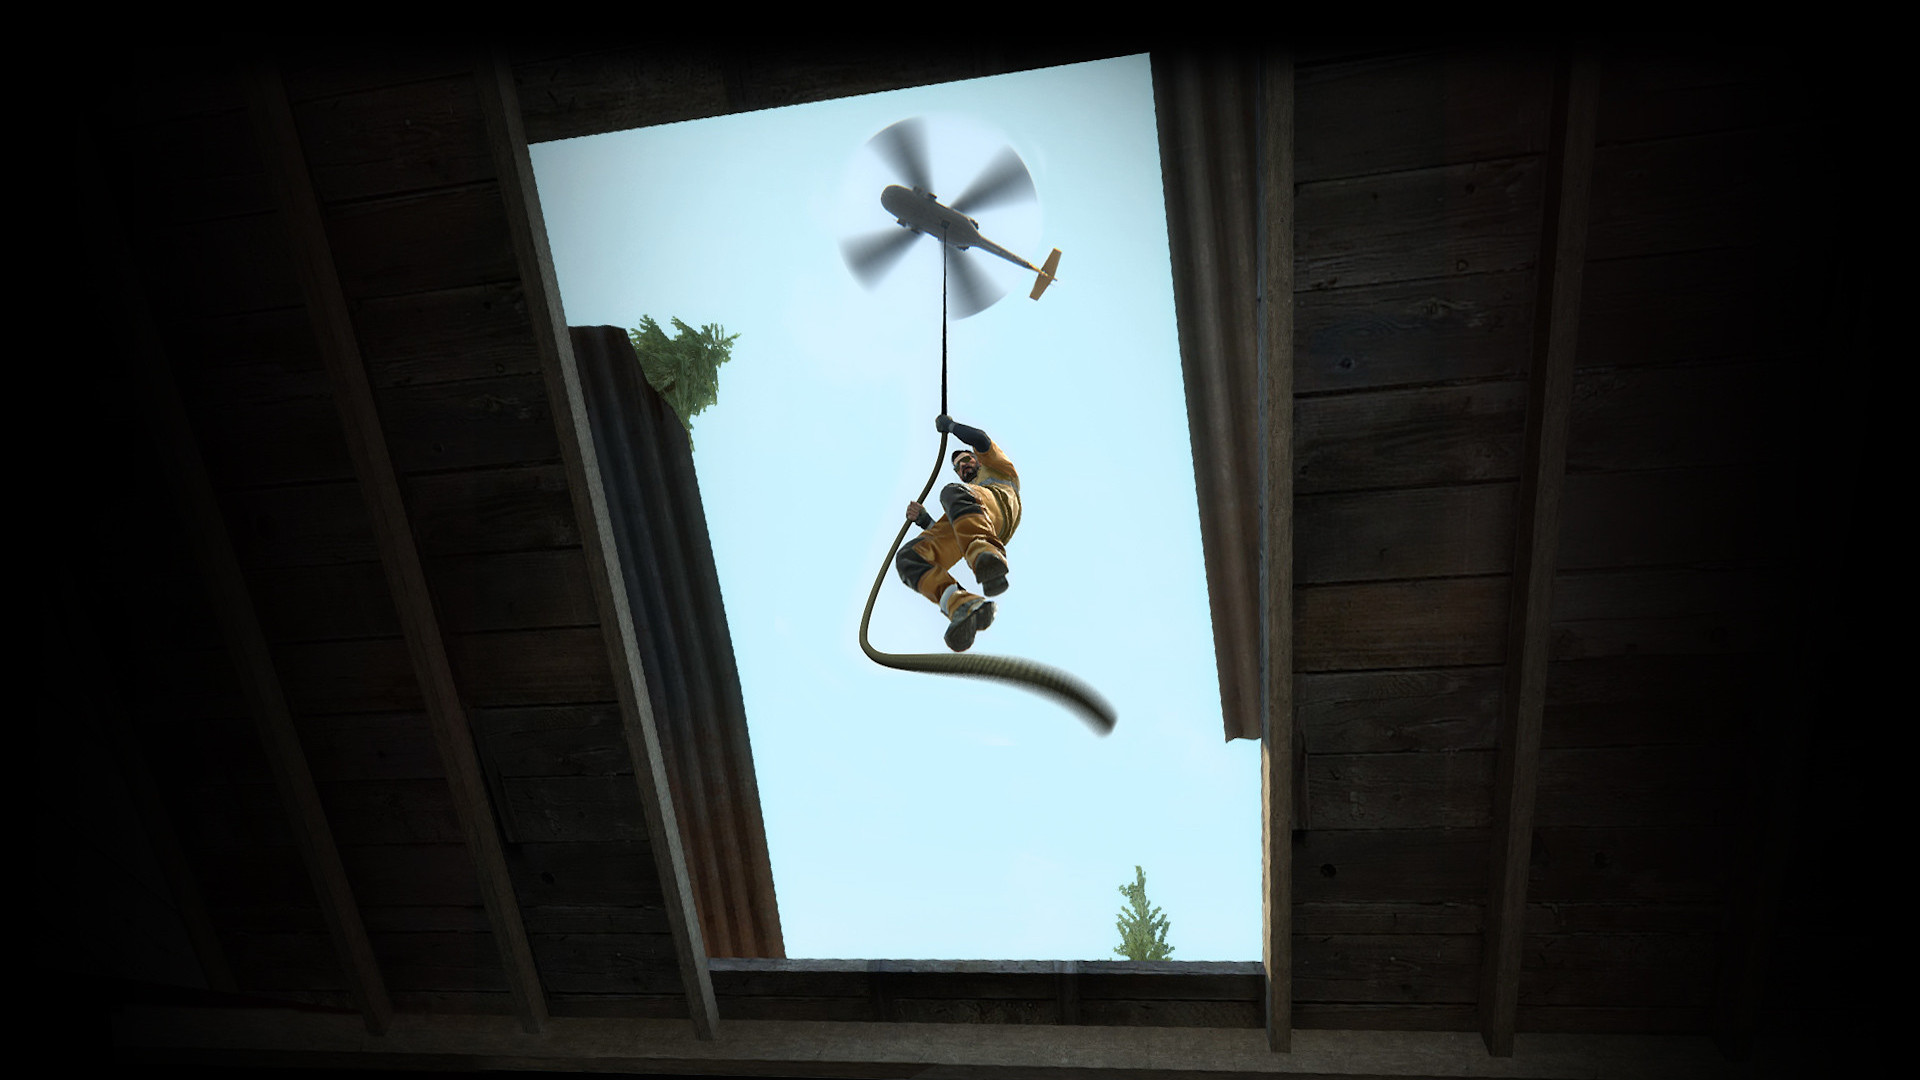 Beste Battle Royale Games: A Man In a Orange Jumpsuit daalt een touw af van een helikopter in CS: Gos Danger Zone